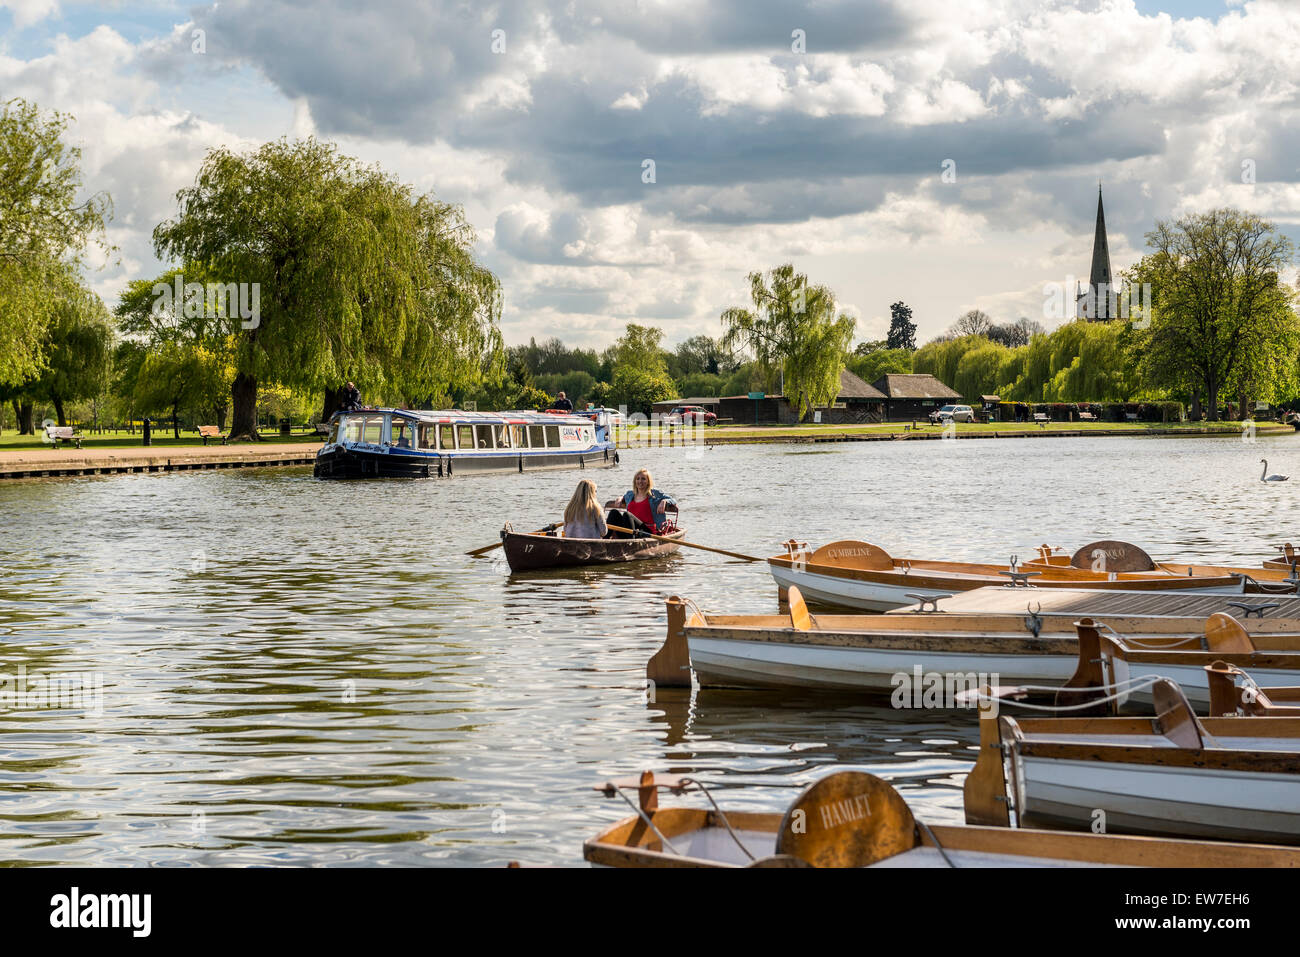 Der Fluss Avon in Stratford-upon-Avon ist beliebt bei Touristen für Flusskreuzfahrten und Sportboote Stockfoto